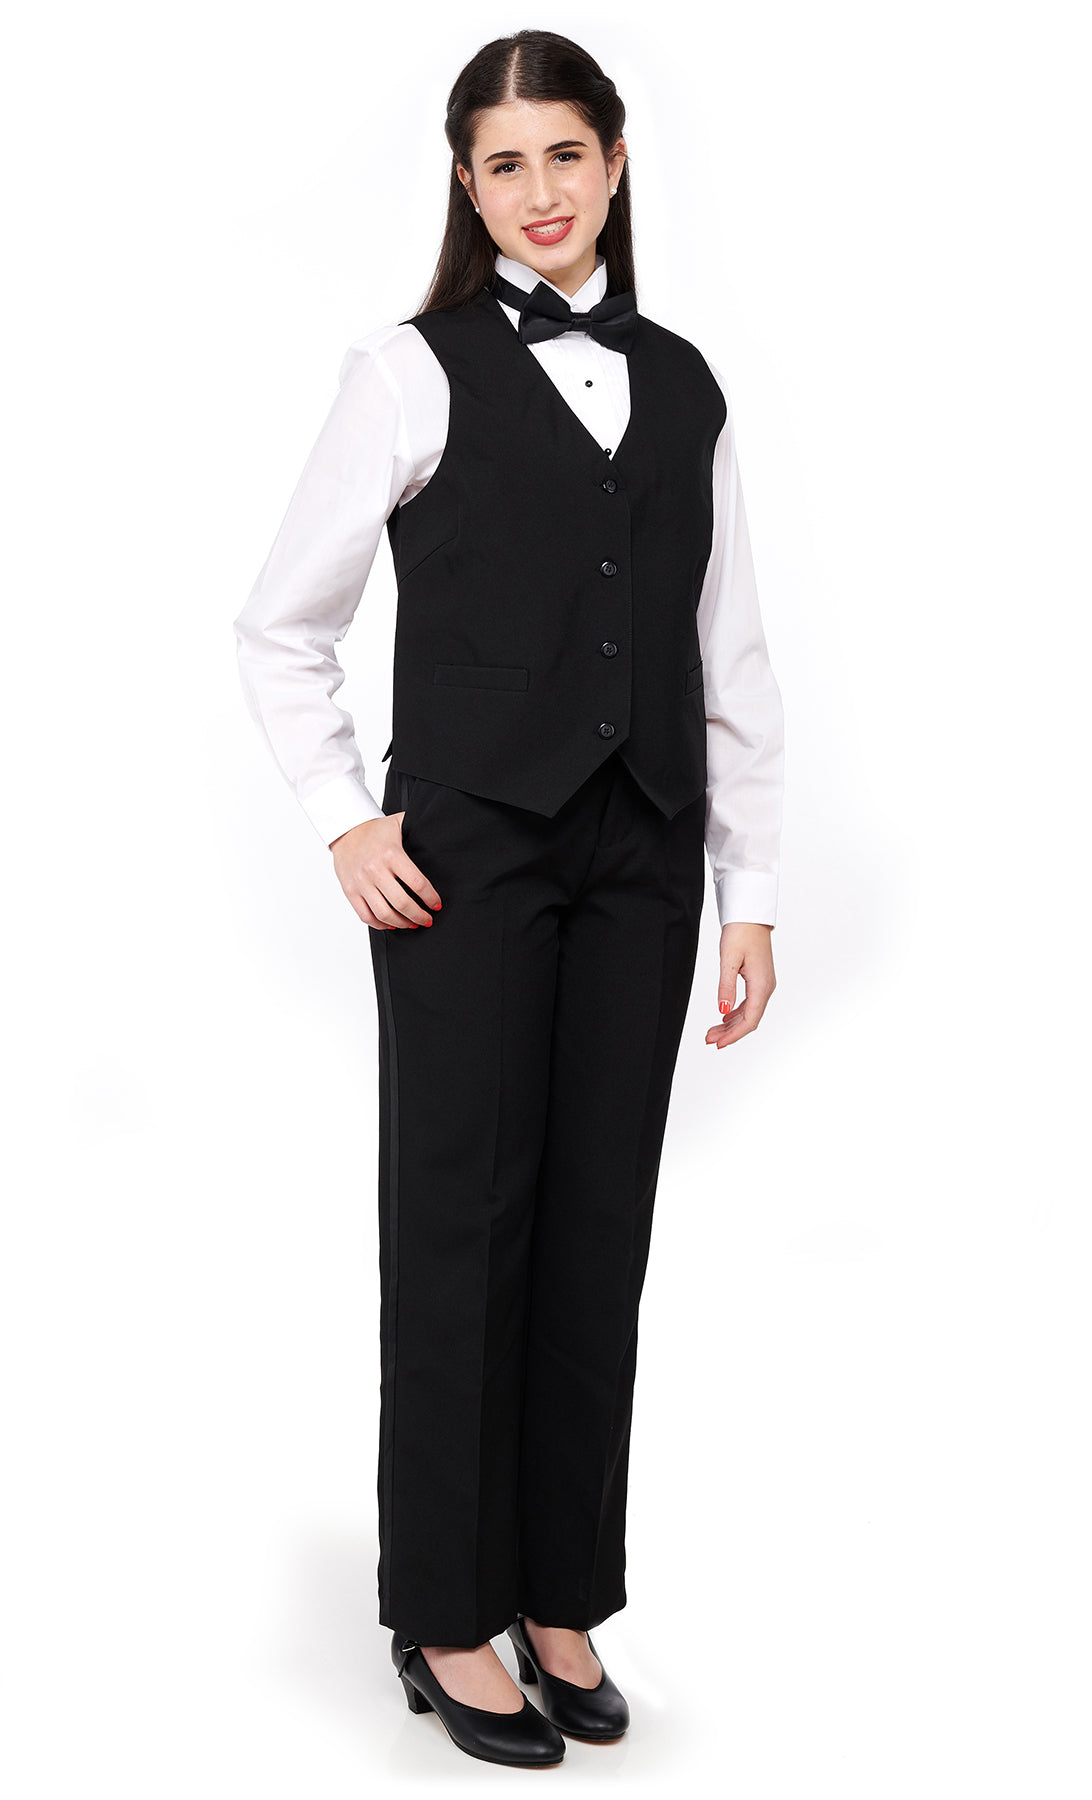 LEONARDO (Style #6703L) - Vest Ensemble Package - Ladies